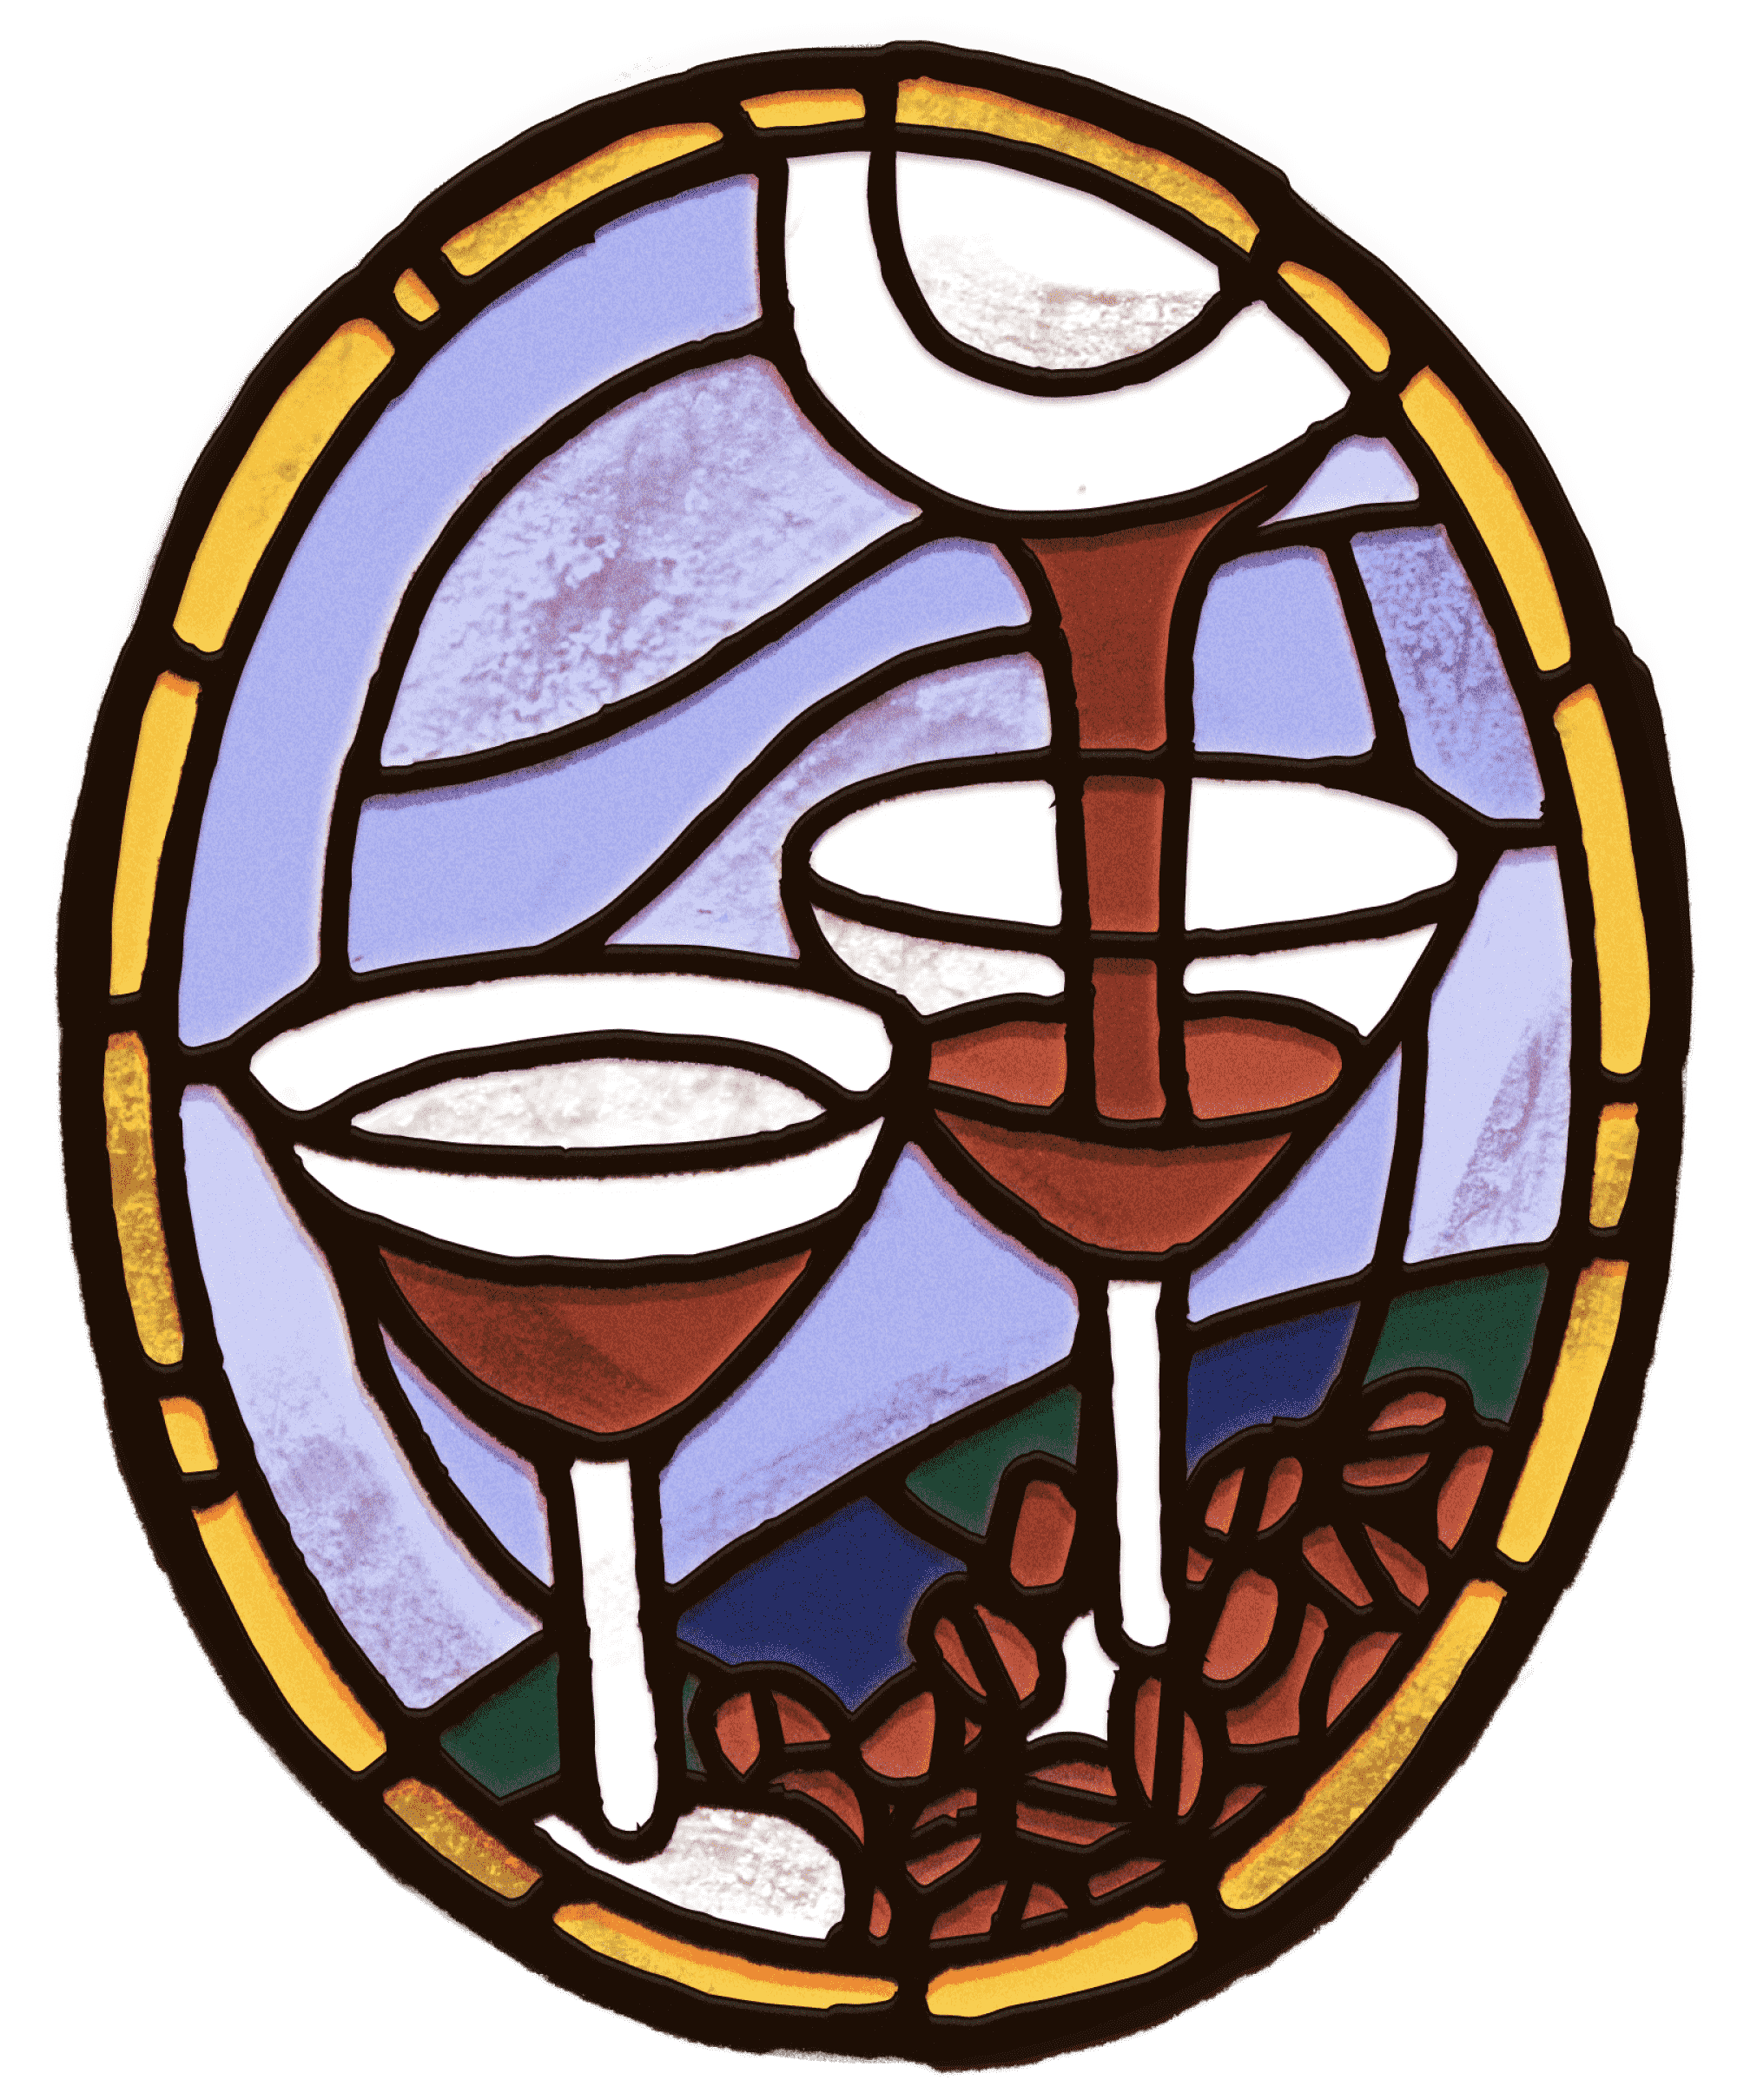 Eine Illustration im Buntglasstil, bei der ein Espresso Martini in zwei Gläser gegossen wird